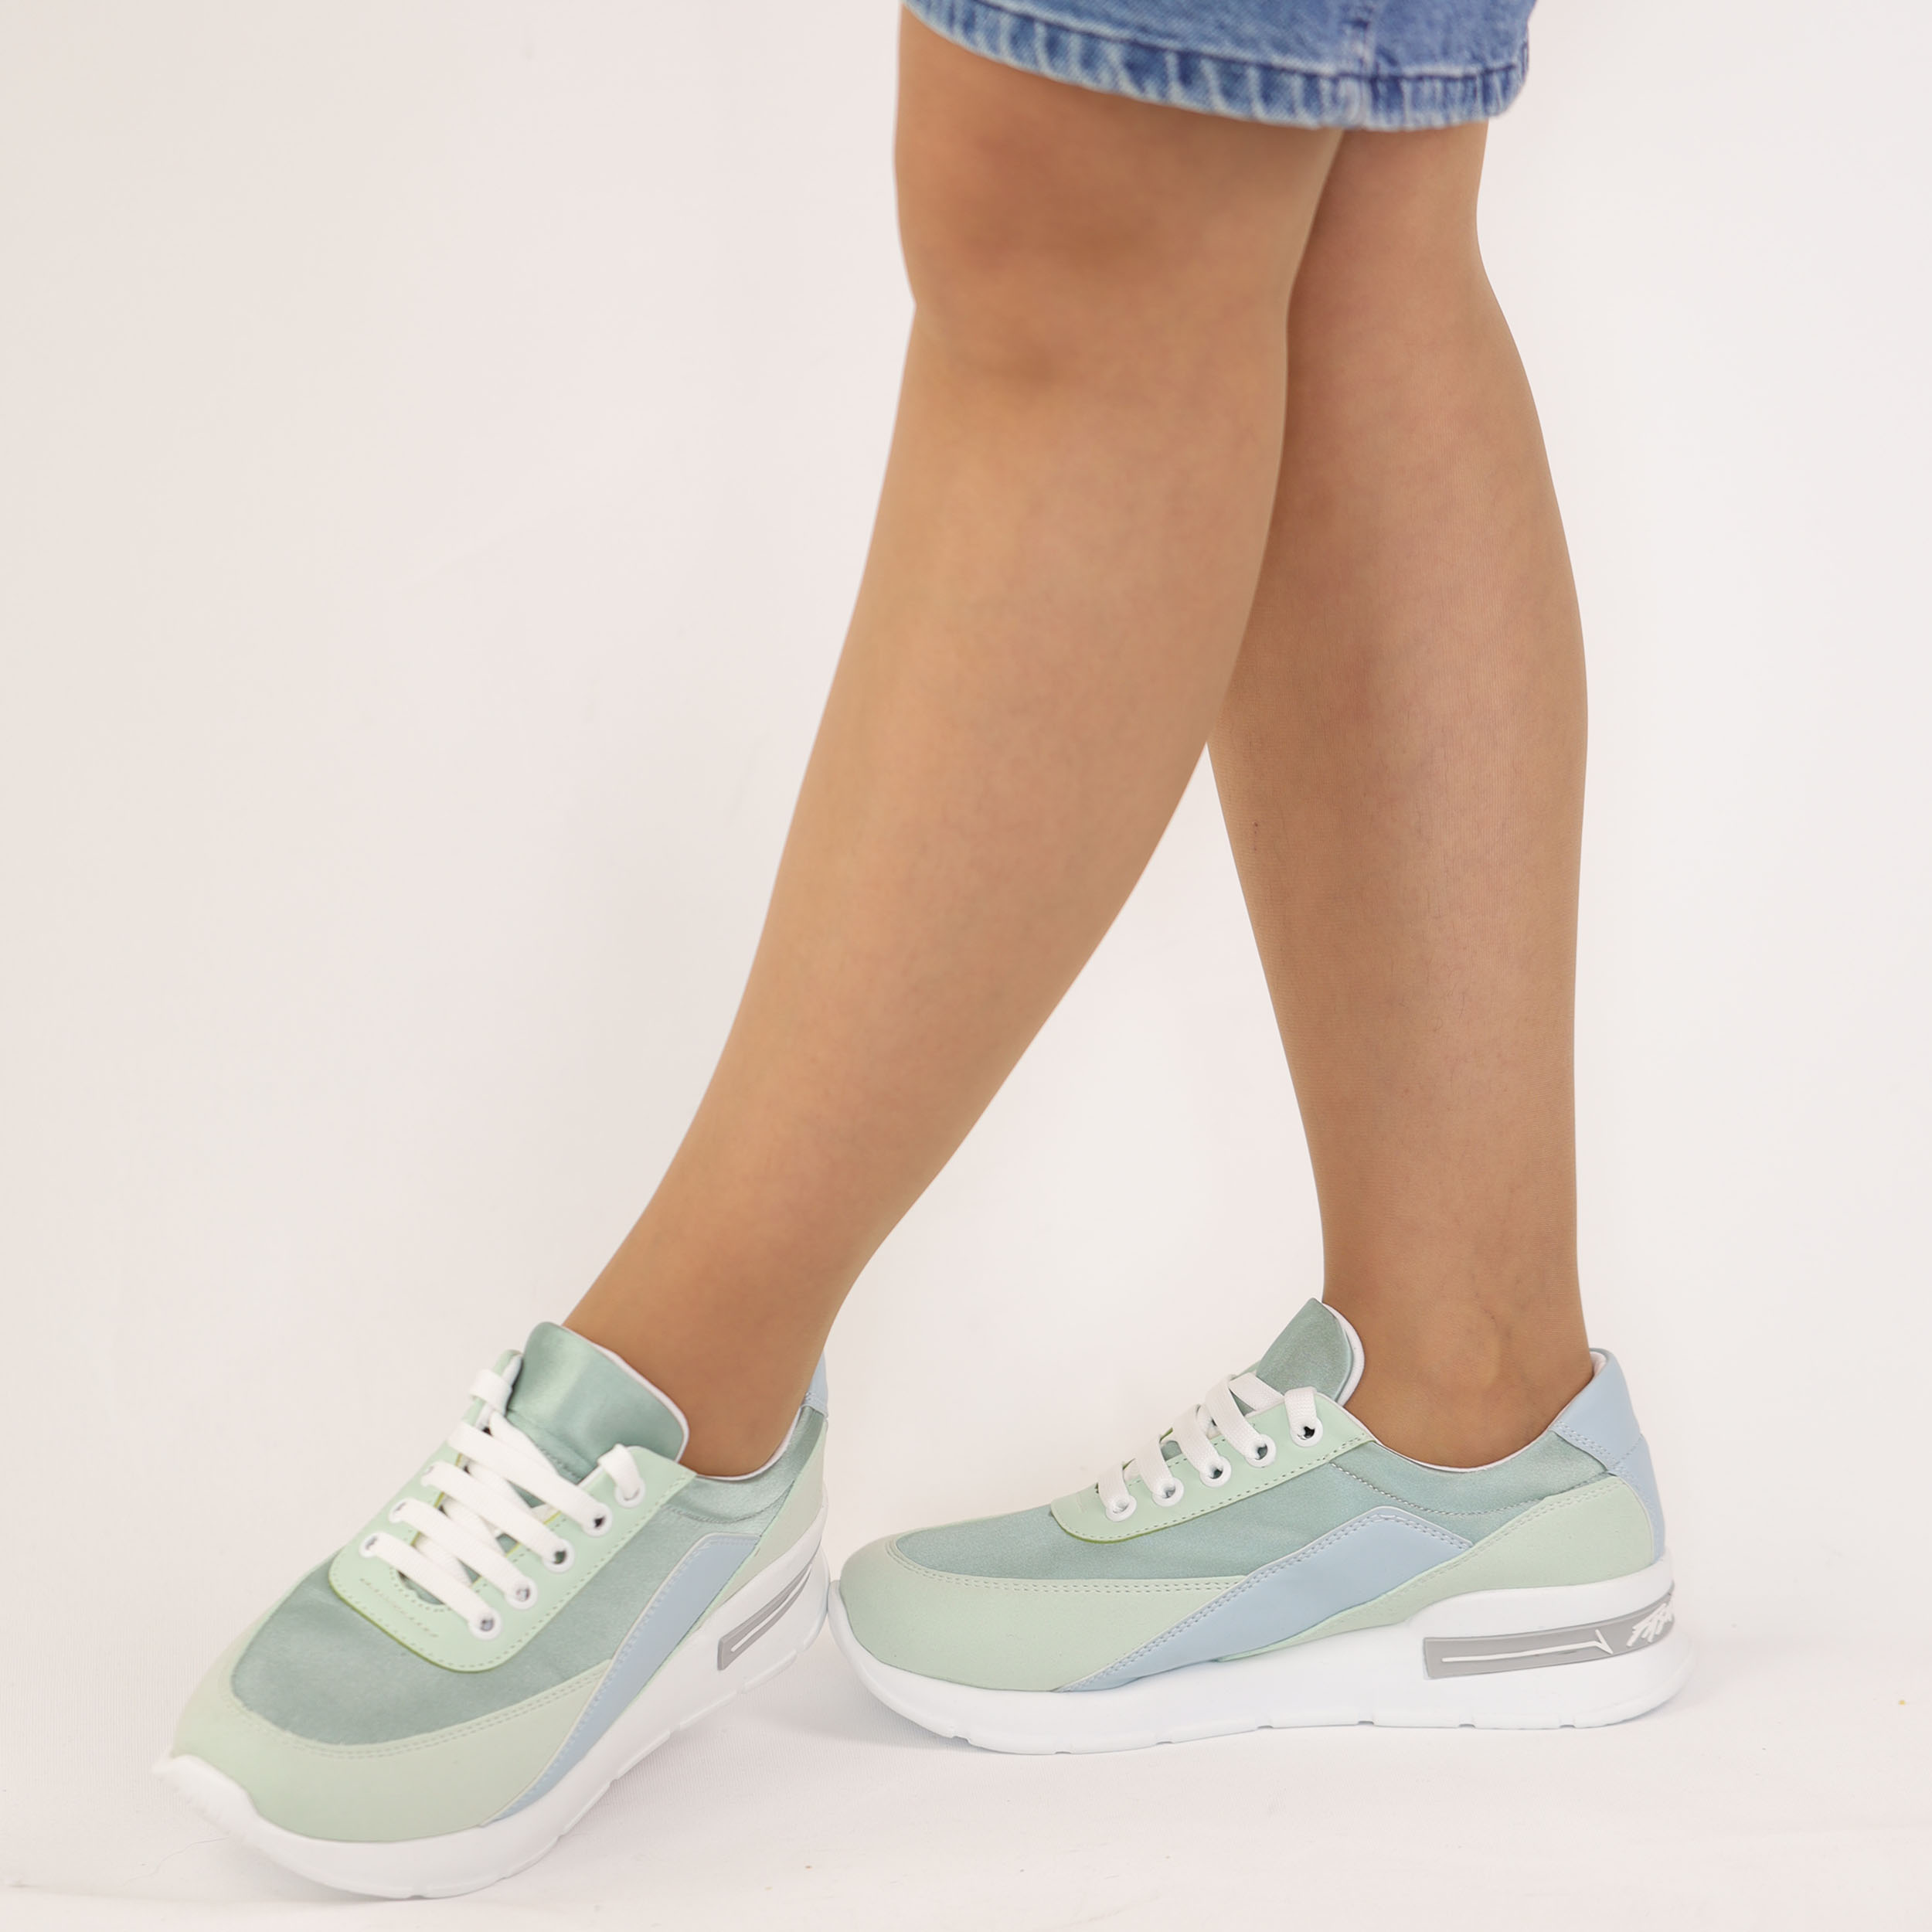 Kadın Kalın Tabanlı Bağcıklı Su Yeşili Sneakers Günlük Spor Rahat Ayakkabı, Renk: Yeşil, Beden: 36